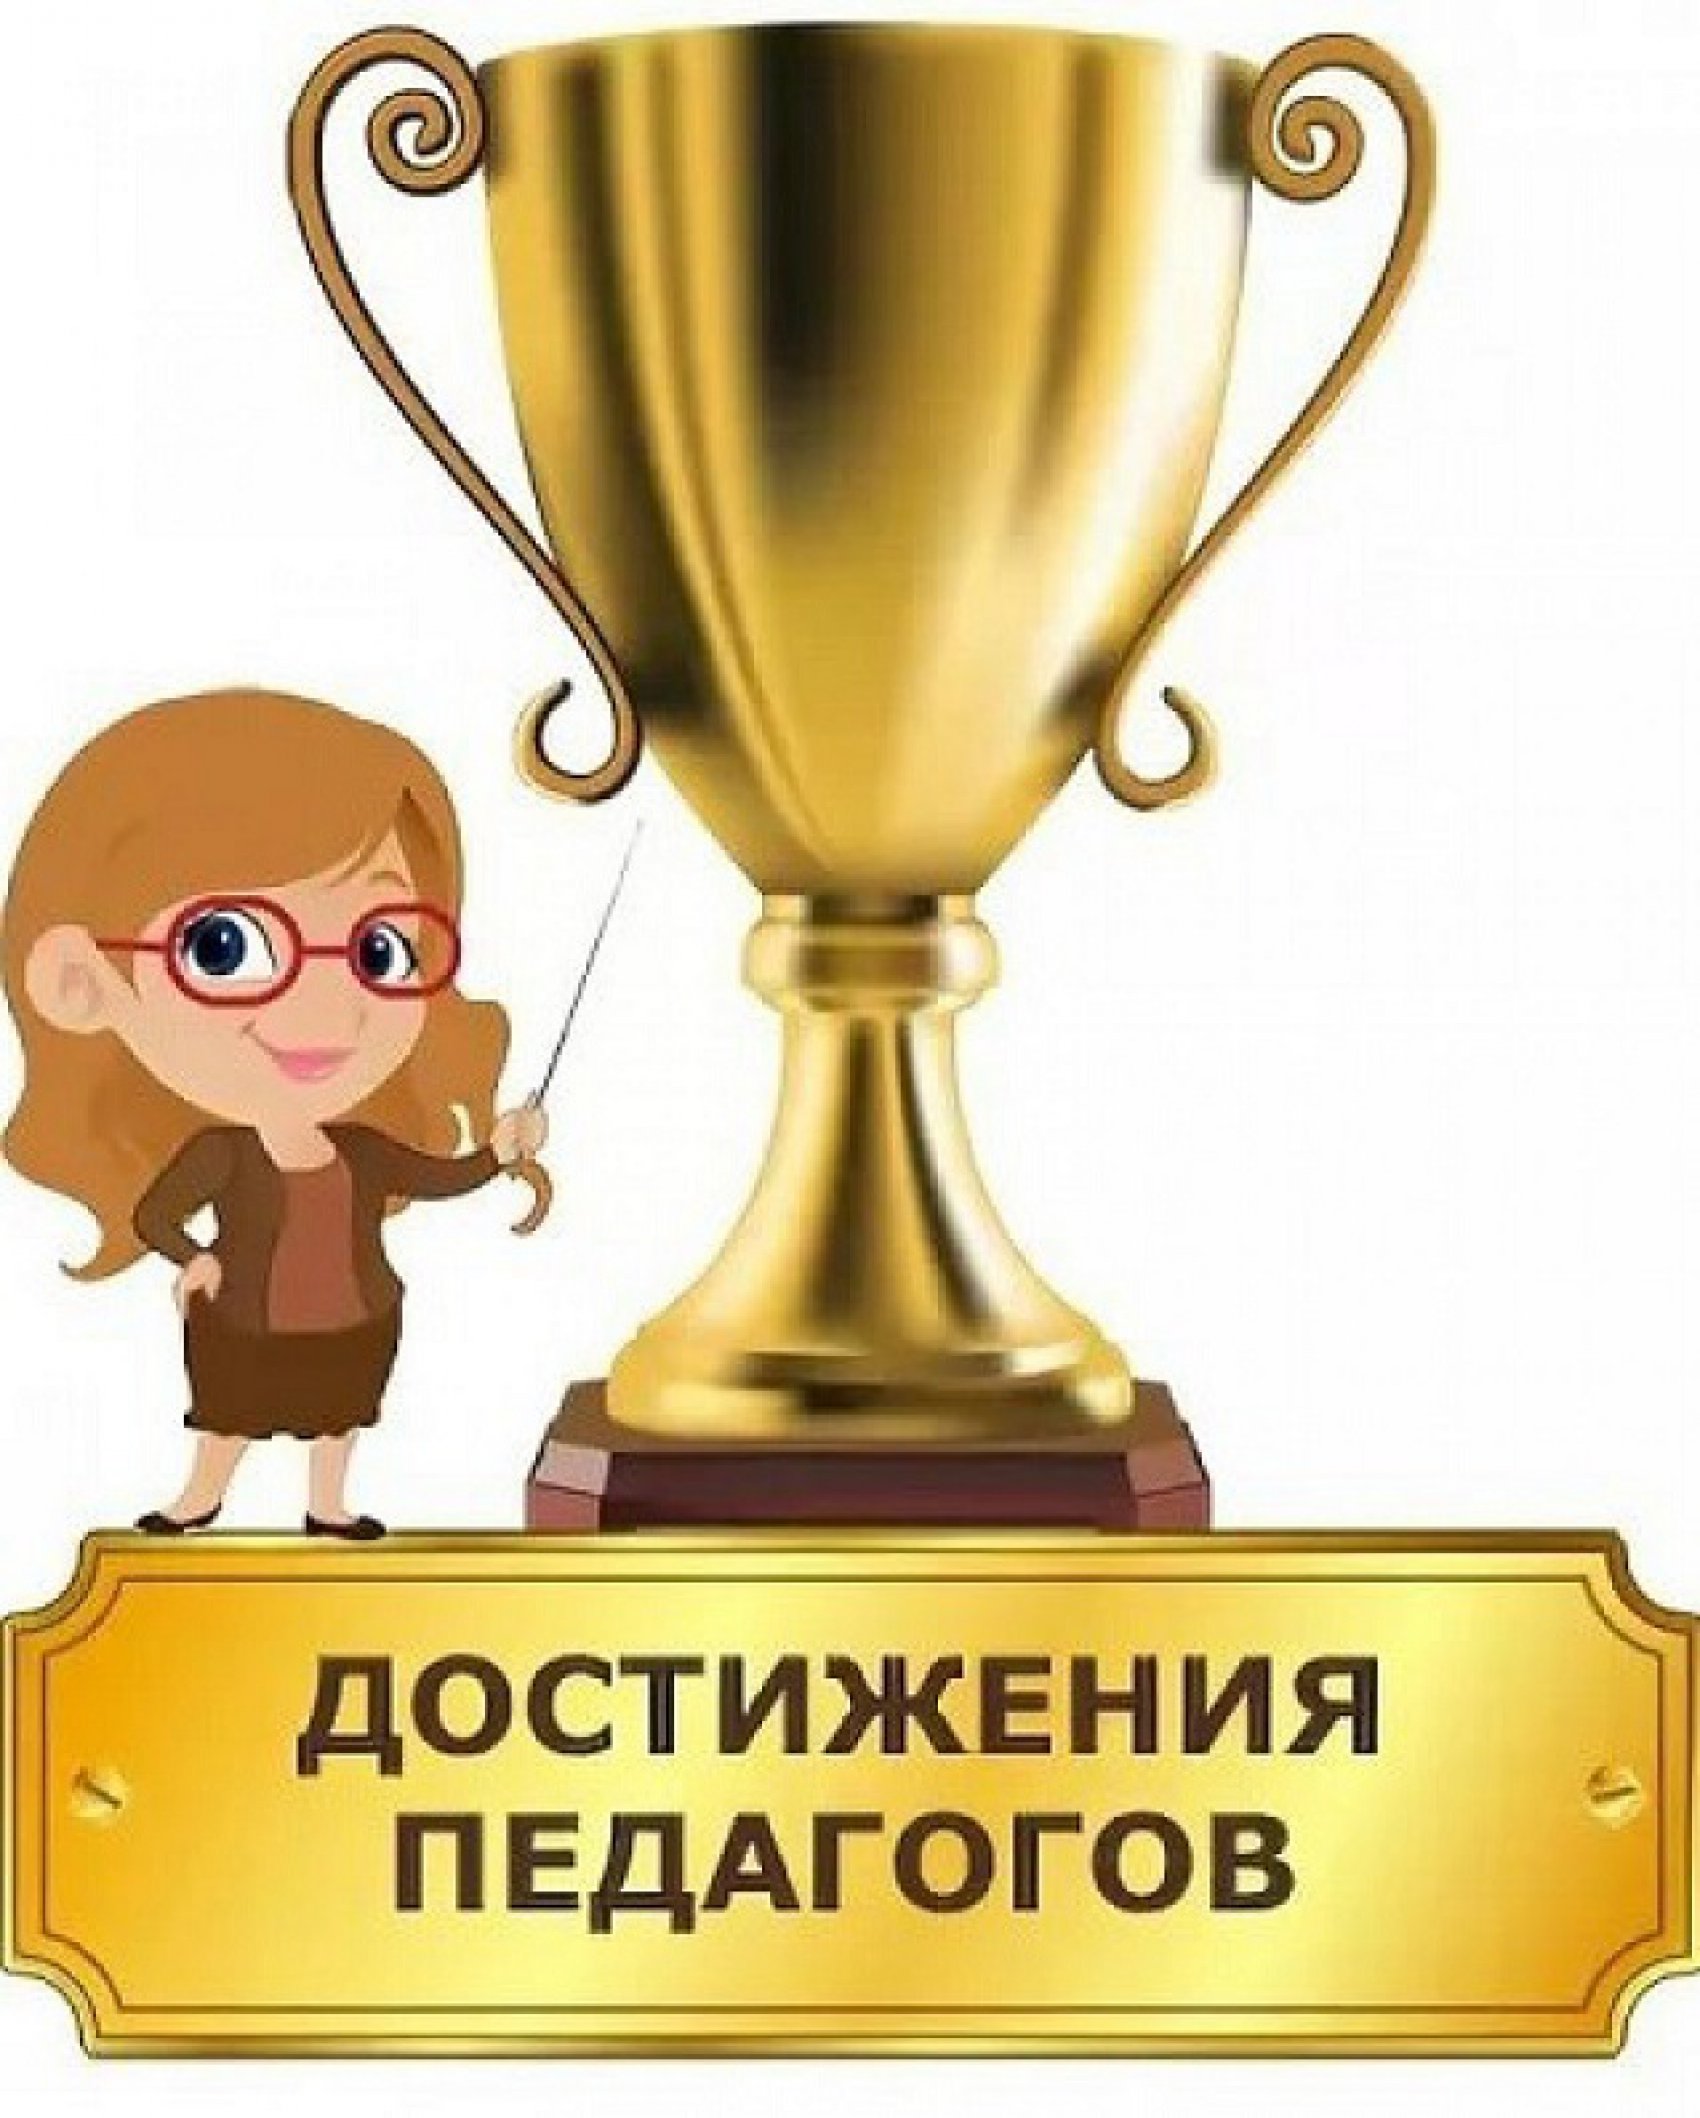 Достижения педагогов-2017